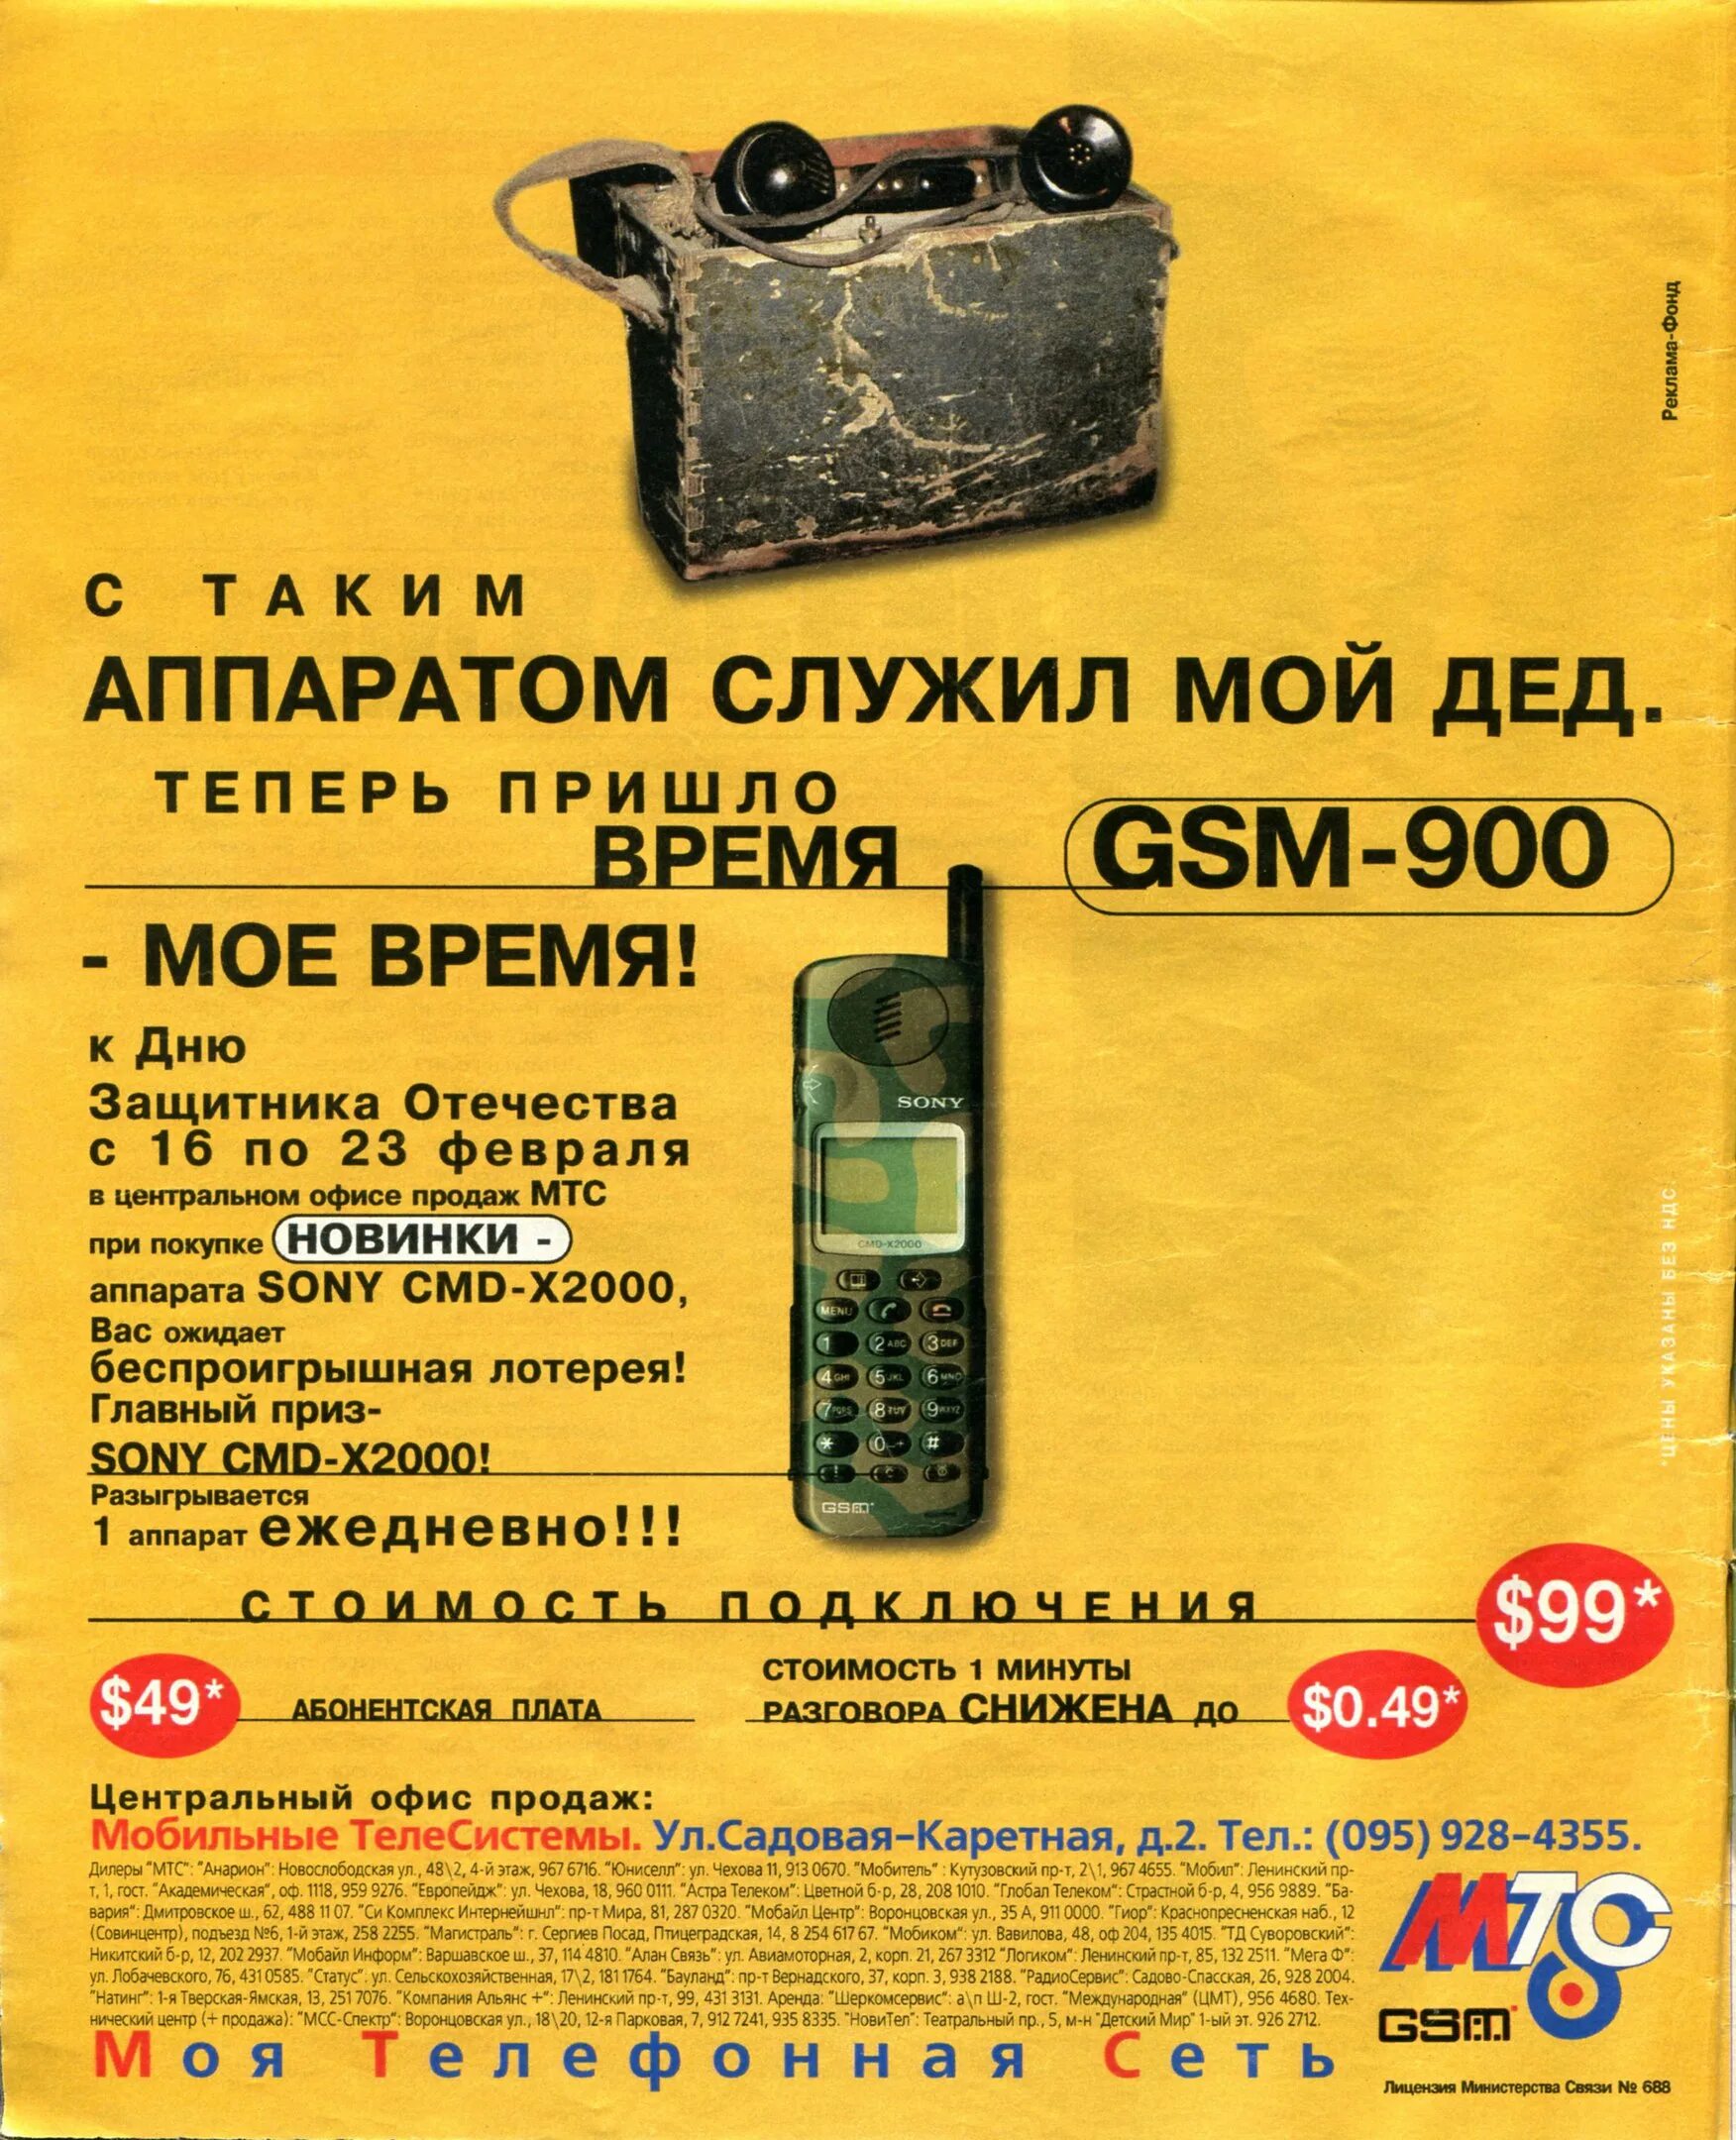 Мтс gsm. Старая реклама МТС. Реклама сотовой связи 90-х. Реклама МТС 2000. МТС GSM реклама.